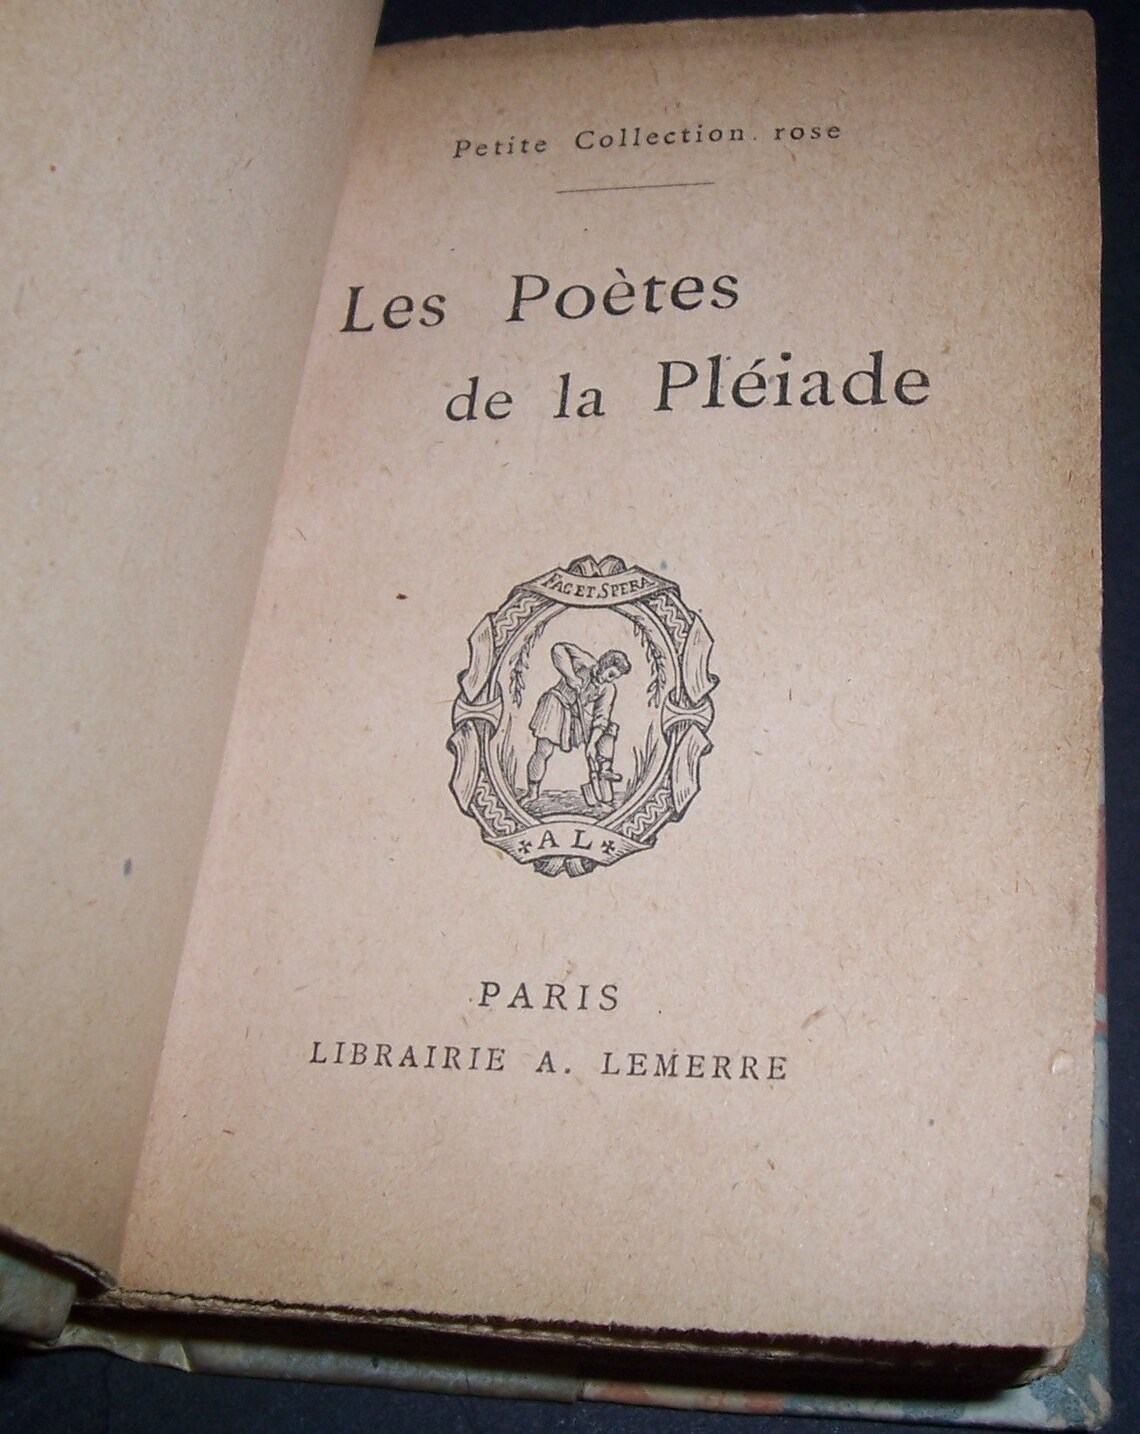 Circa 1840 Les Poetes De La Pleiade book French poetry | Etsy